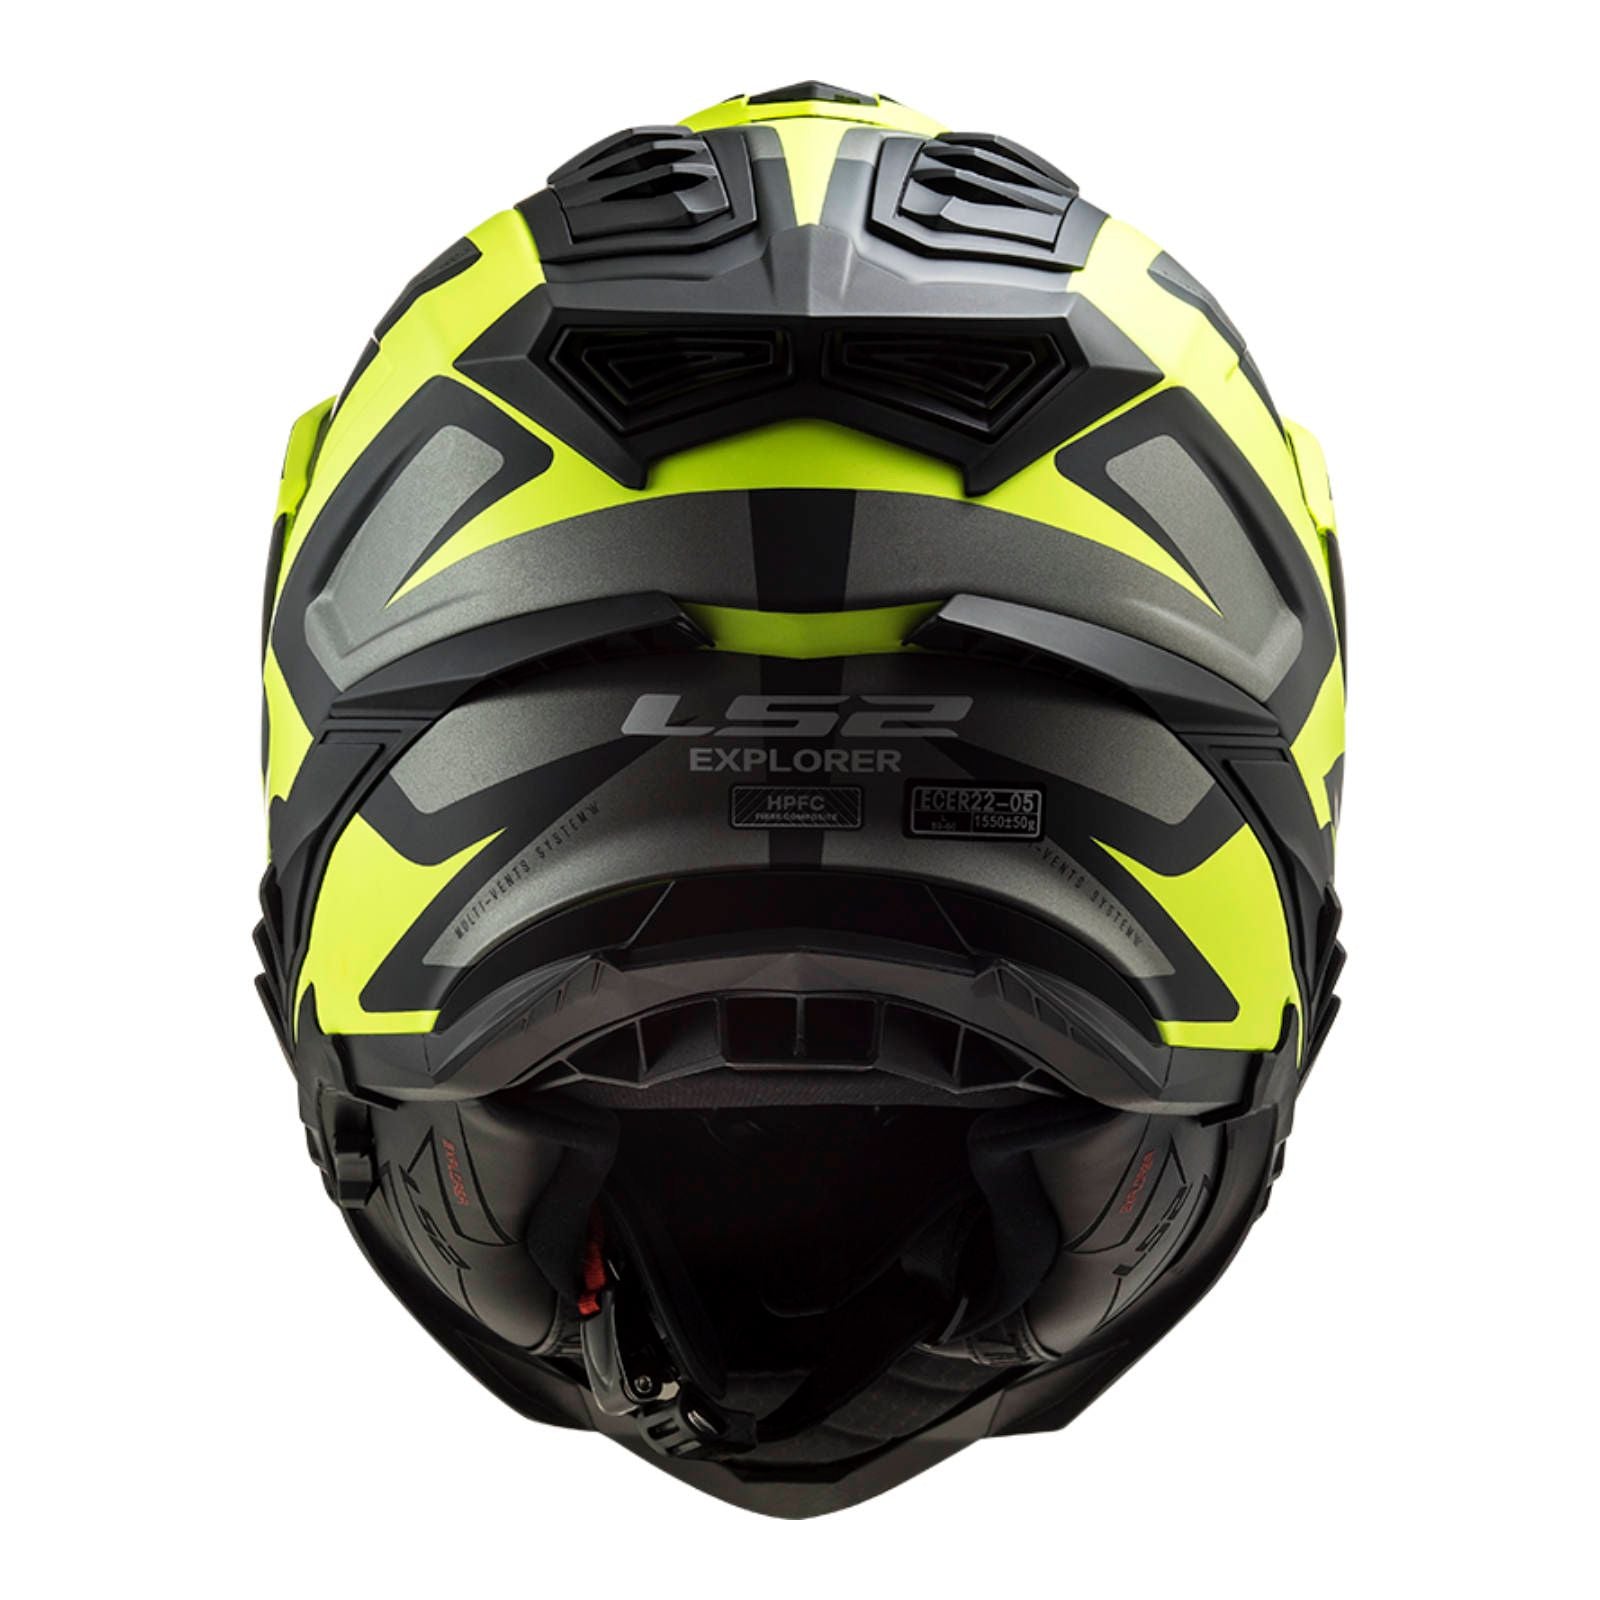 New LS2 Explorer Alter Helmet - Matte Black / Hi-Vis (XS) #LS2MX701ALTMBYXS